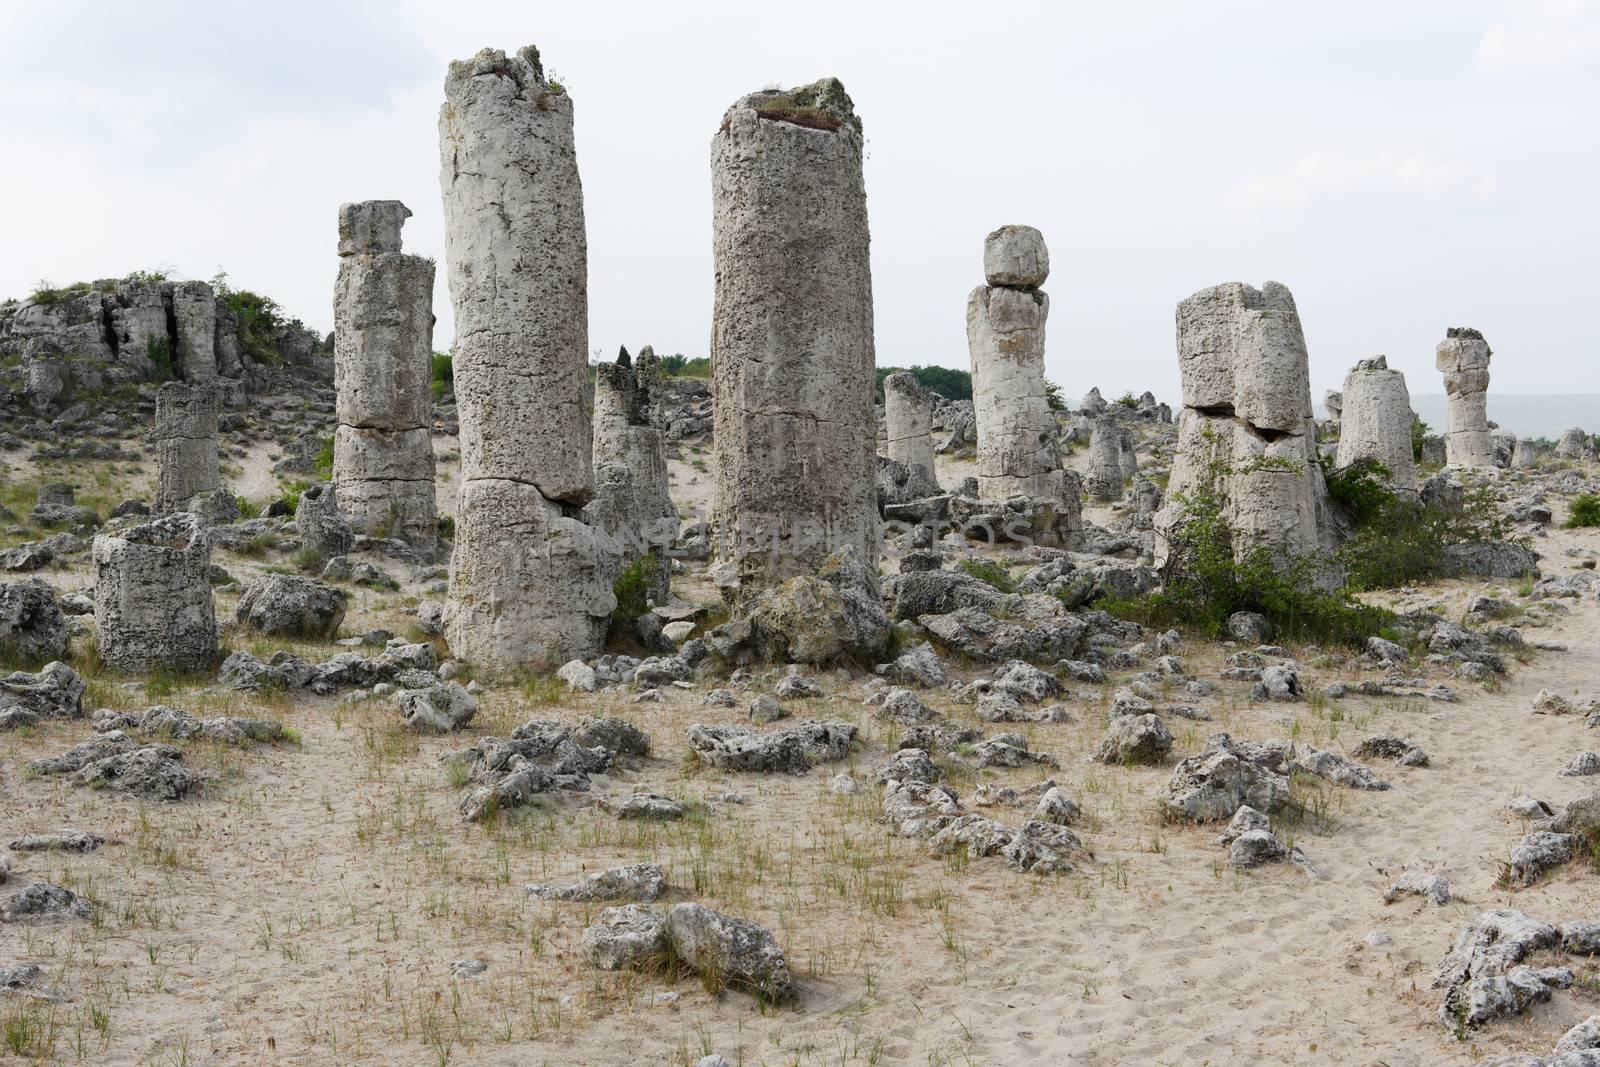 Stone phenomenon near Varna by ecobo